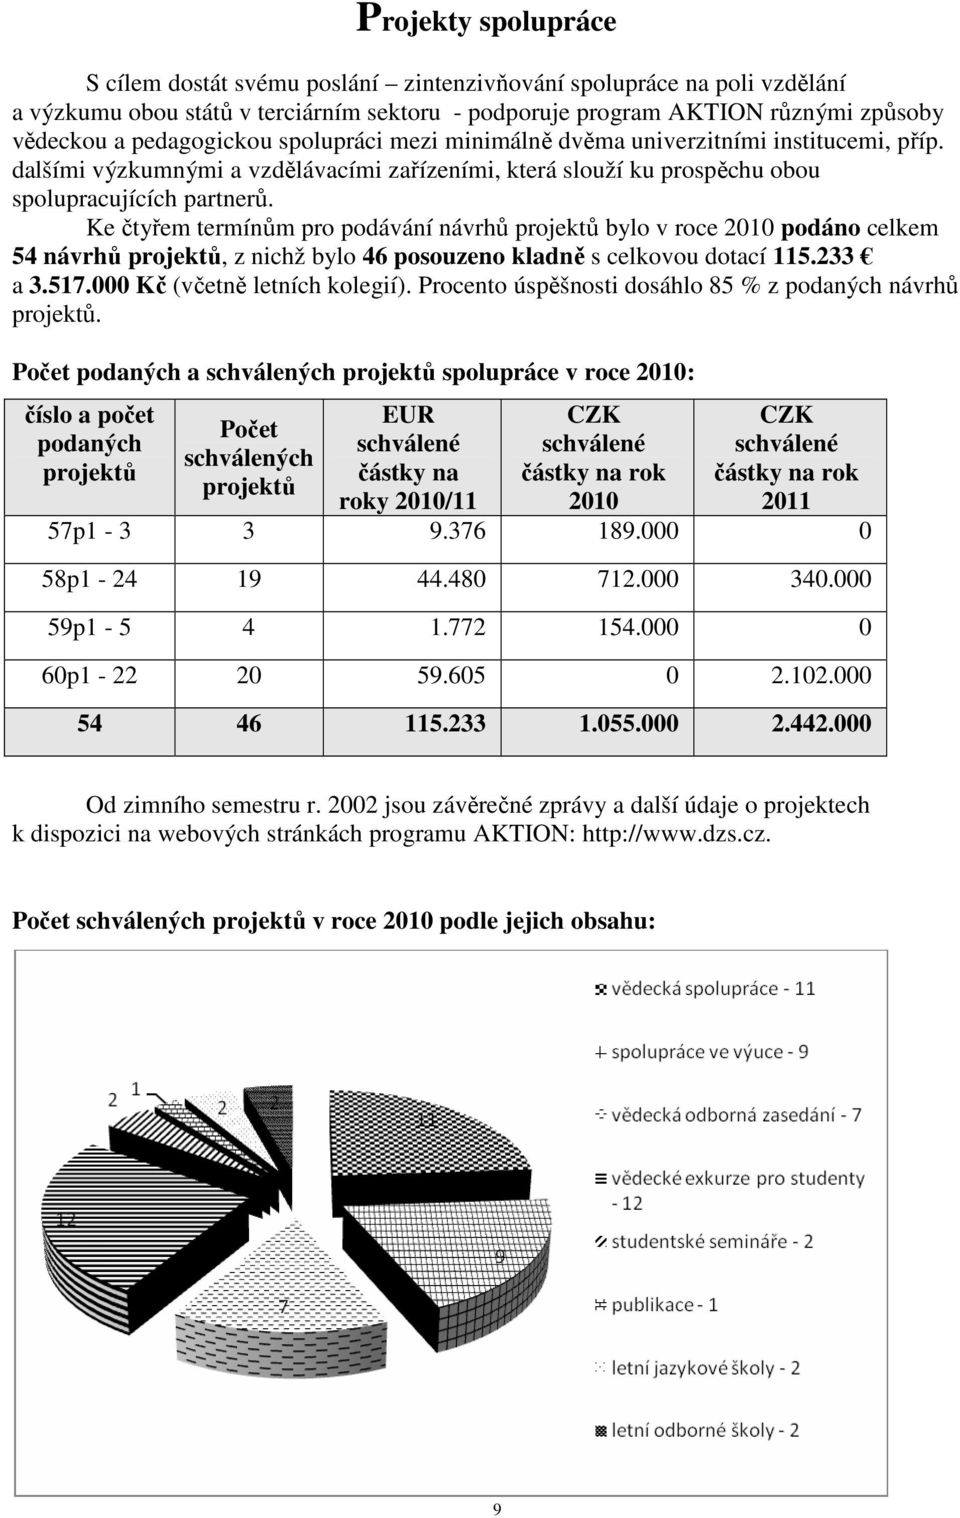 Ke čtyřem termínům pro podávání návrhů projektů bylo v roce 2010 podáno celkem 54 návrhů projektů, z nichž bylo 46 posouzeno kladně s celkovou dotací 115.233 a 3.517.000 Kč (včetně letních kolegií).